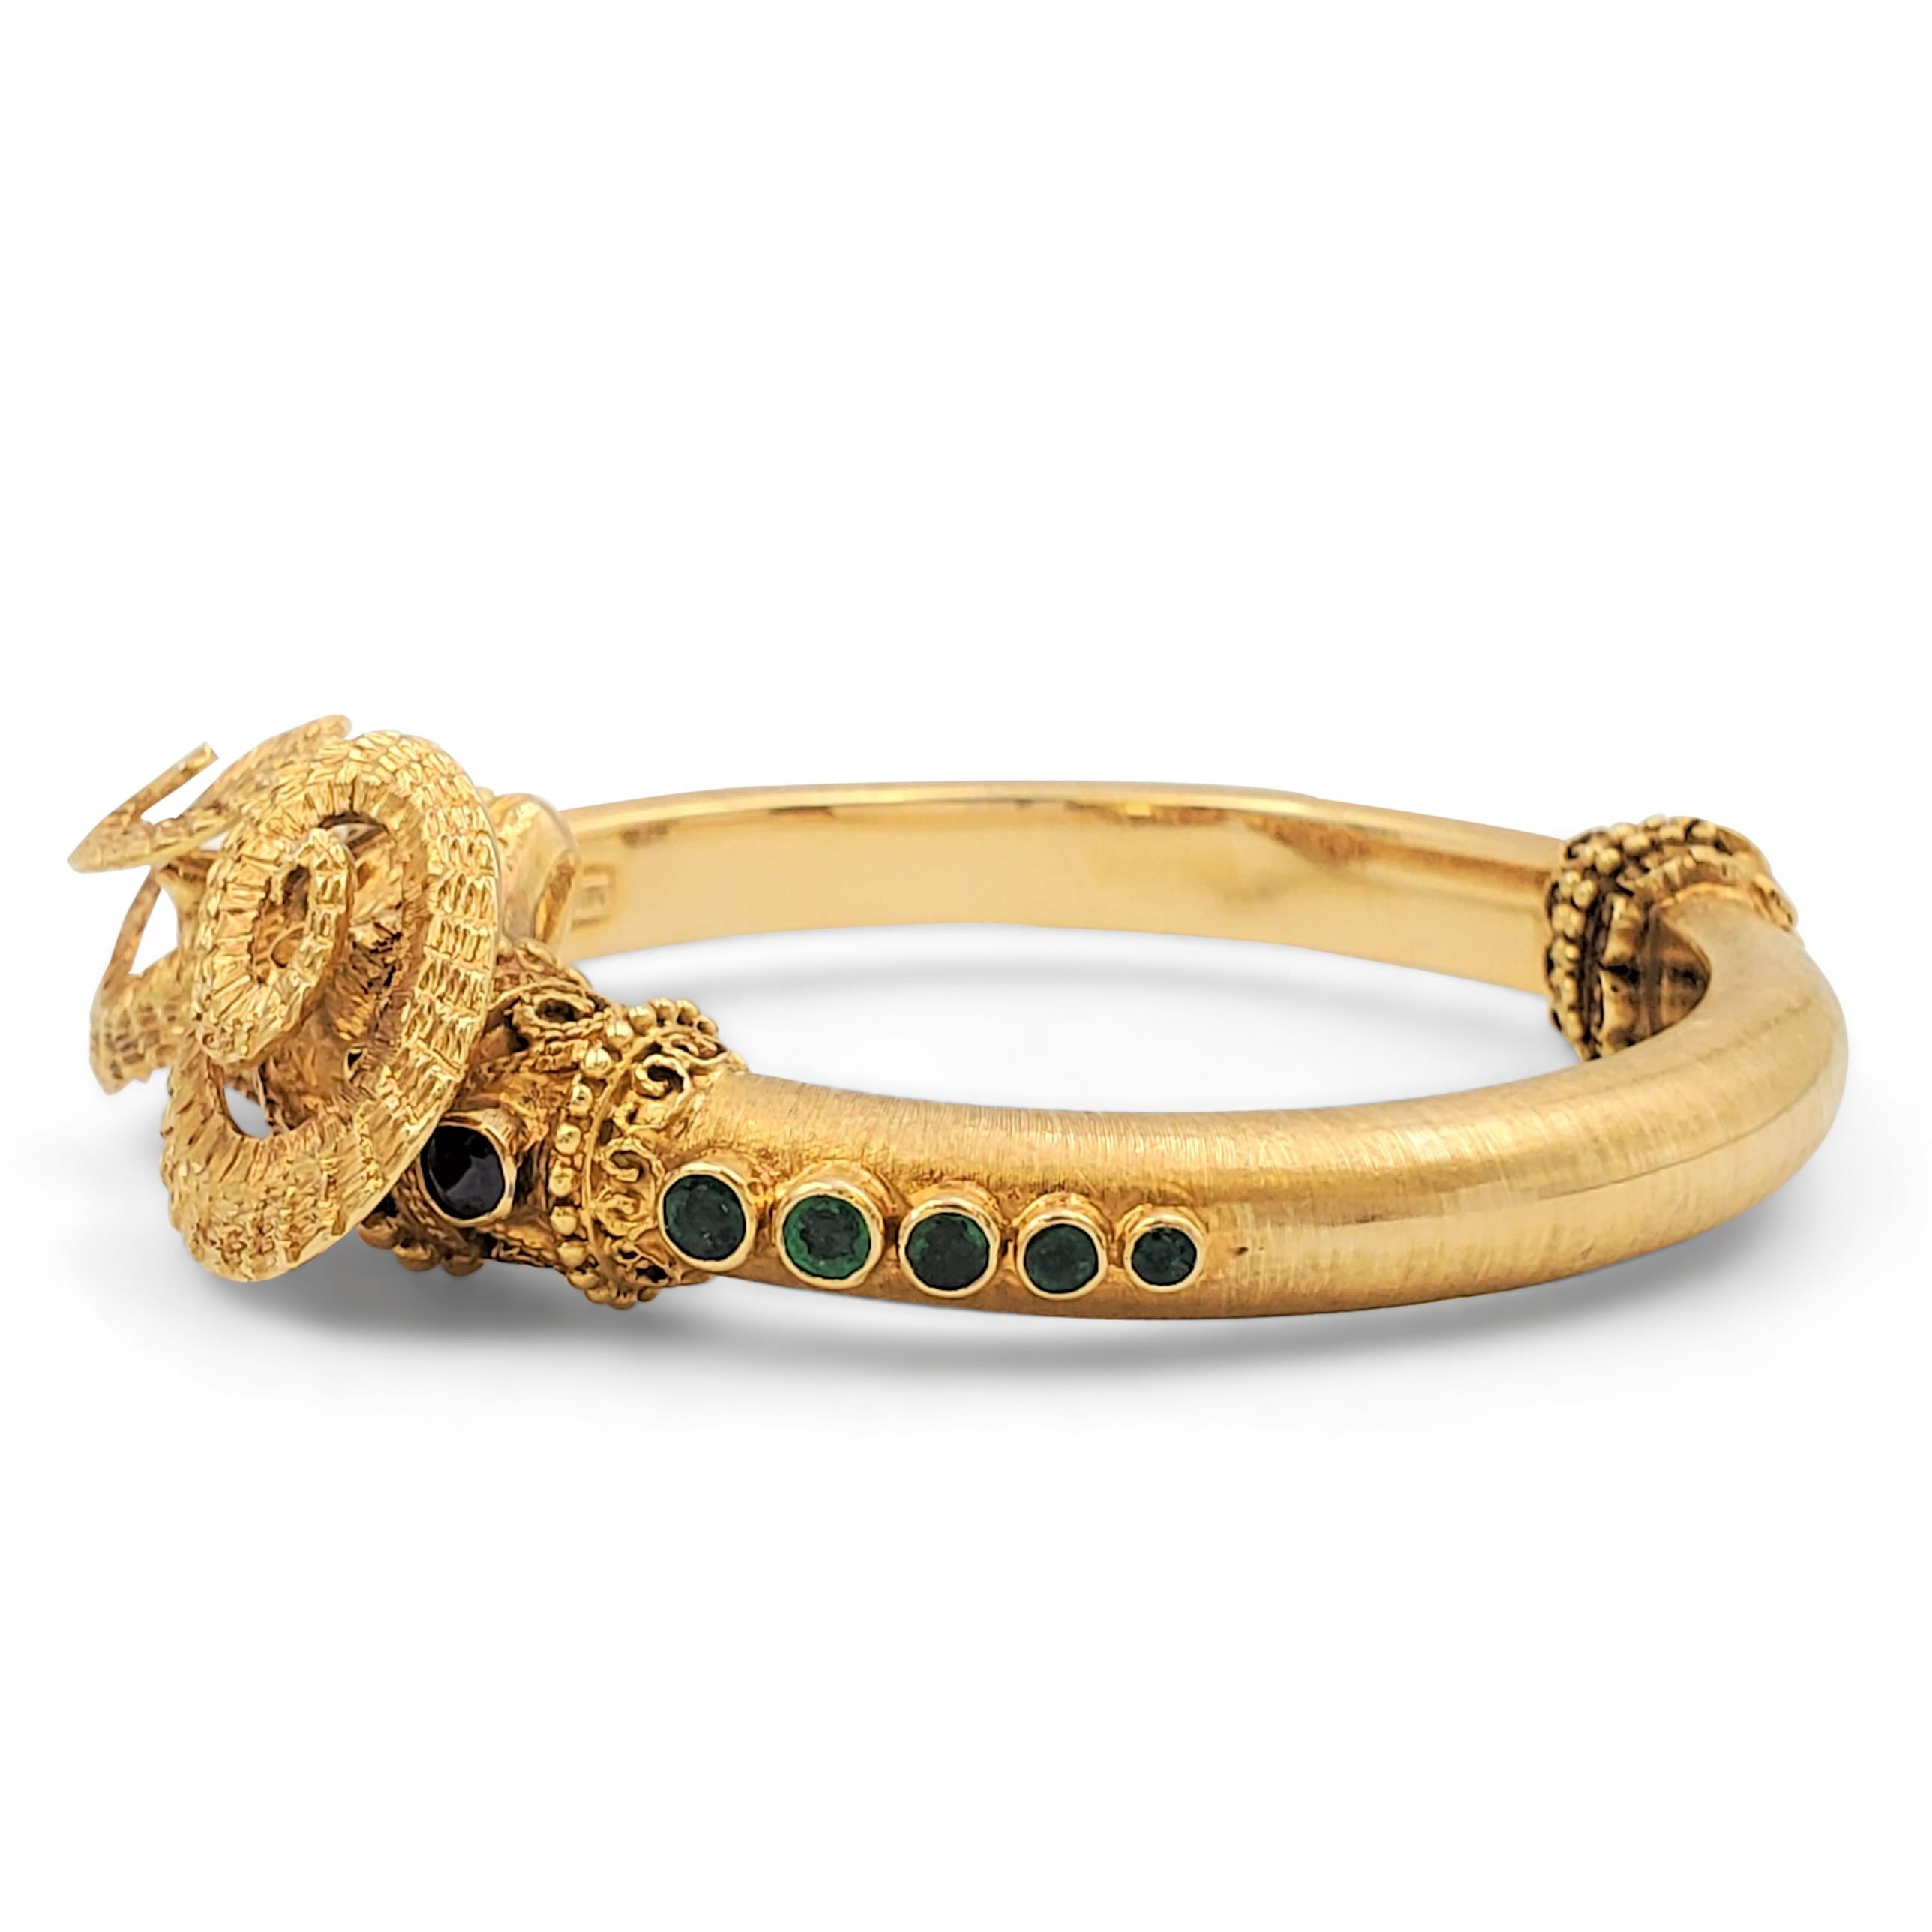 L'authentique bracelet bangle à charnière Ilias Lalaounis est fabriqué en or jaune 18 carats. Une finition florentine soyeuse contraste avec des détails texturés et des perles fabriqués à la main. Le design est accentué par des pierres serties